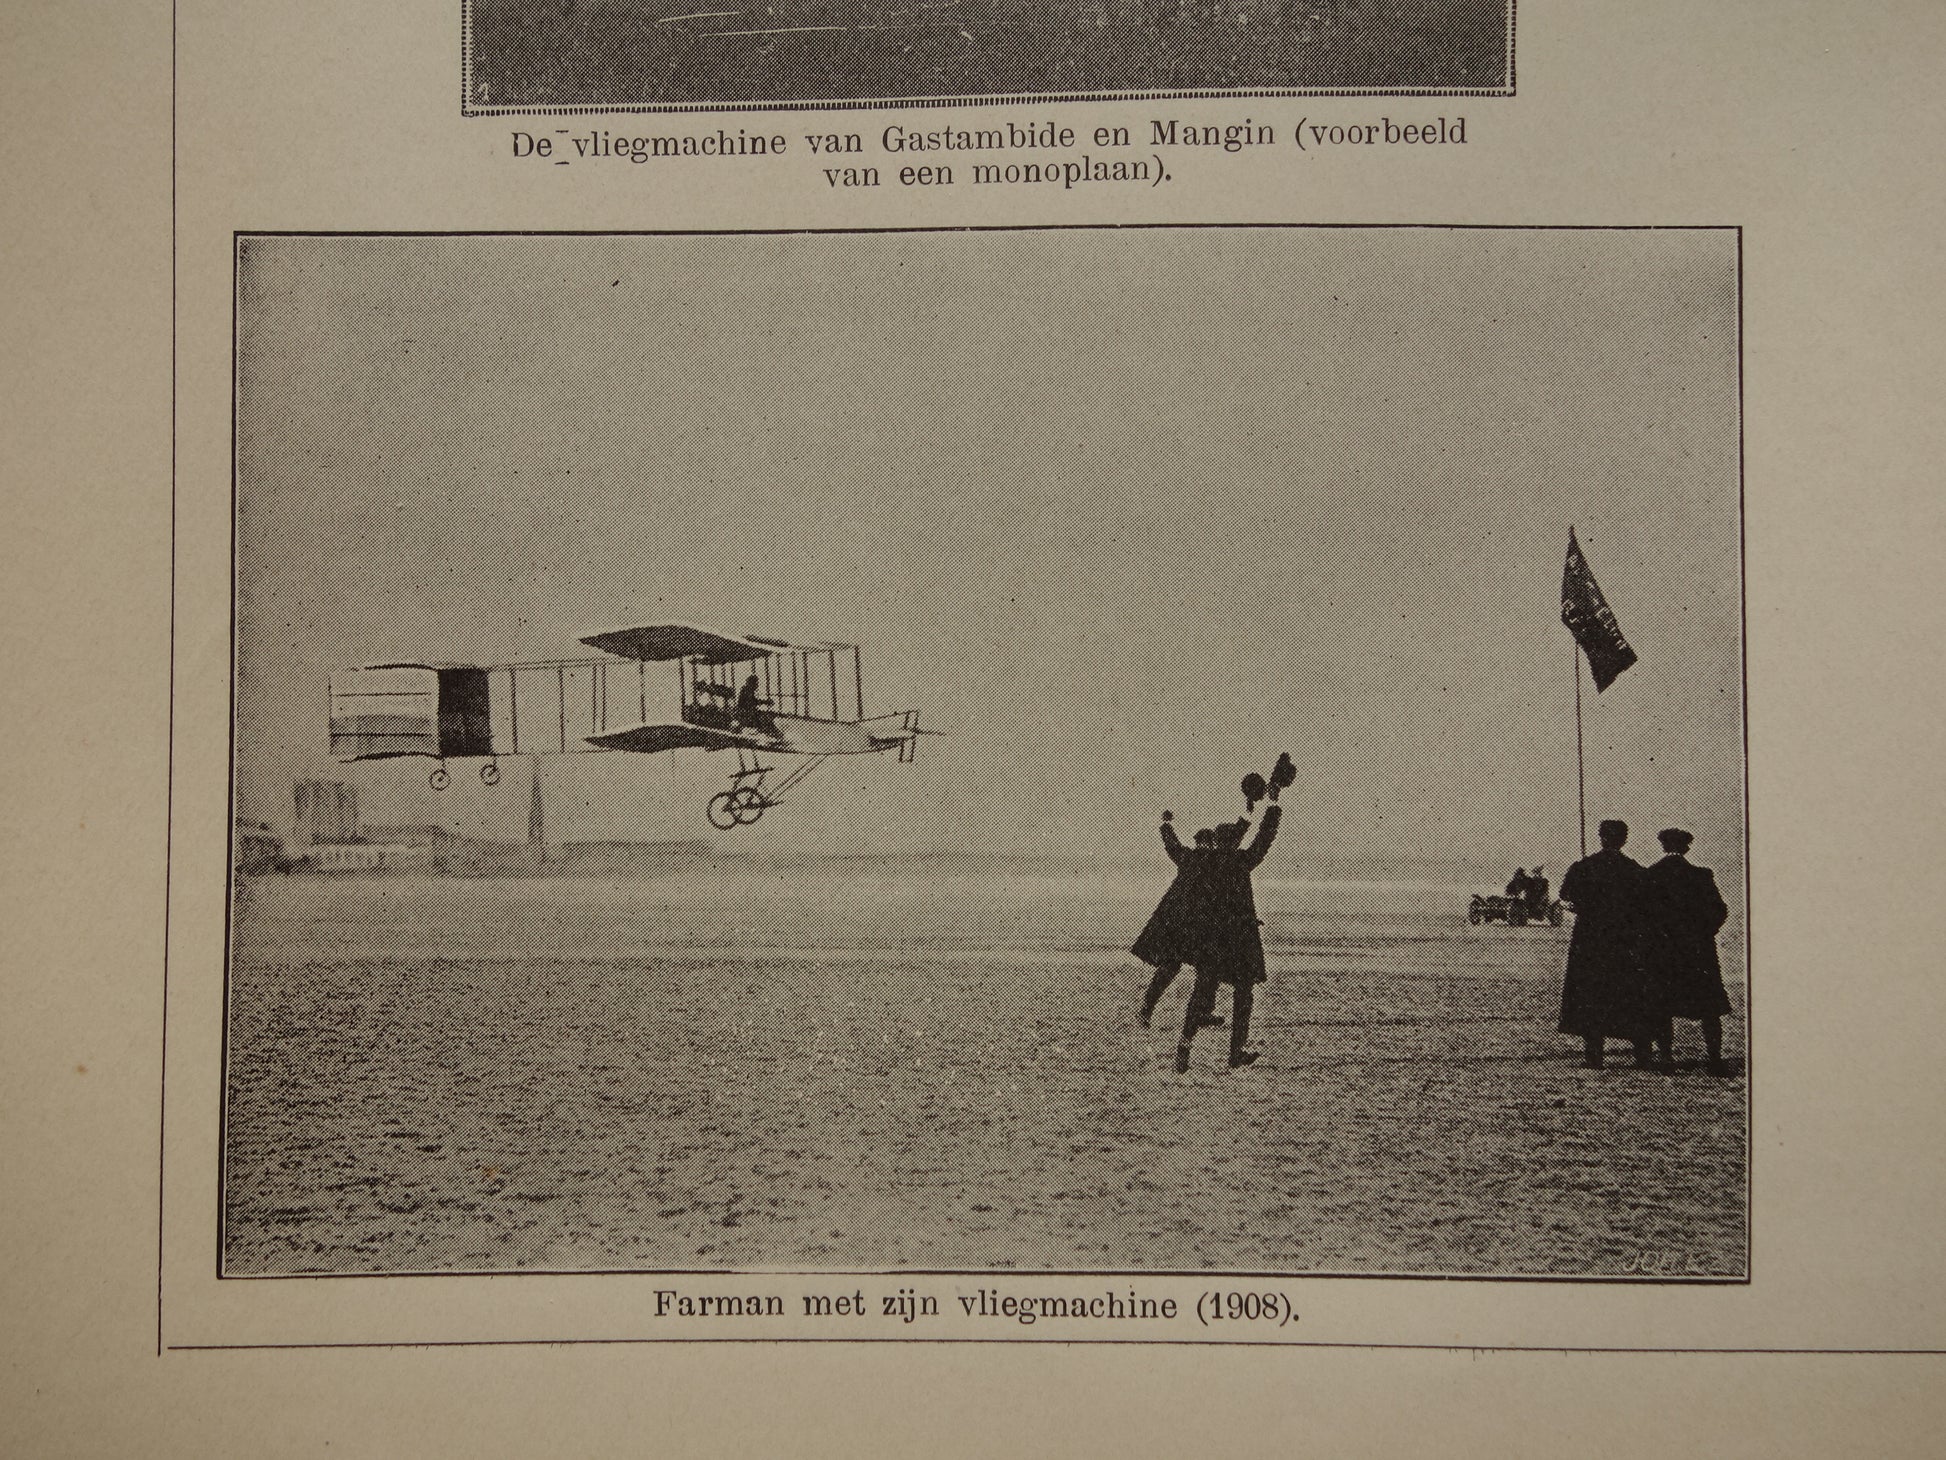 Vliegmachine van Farman in het jaar 1908